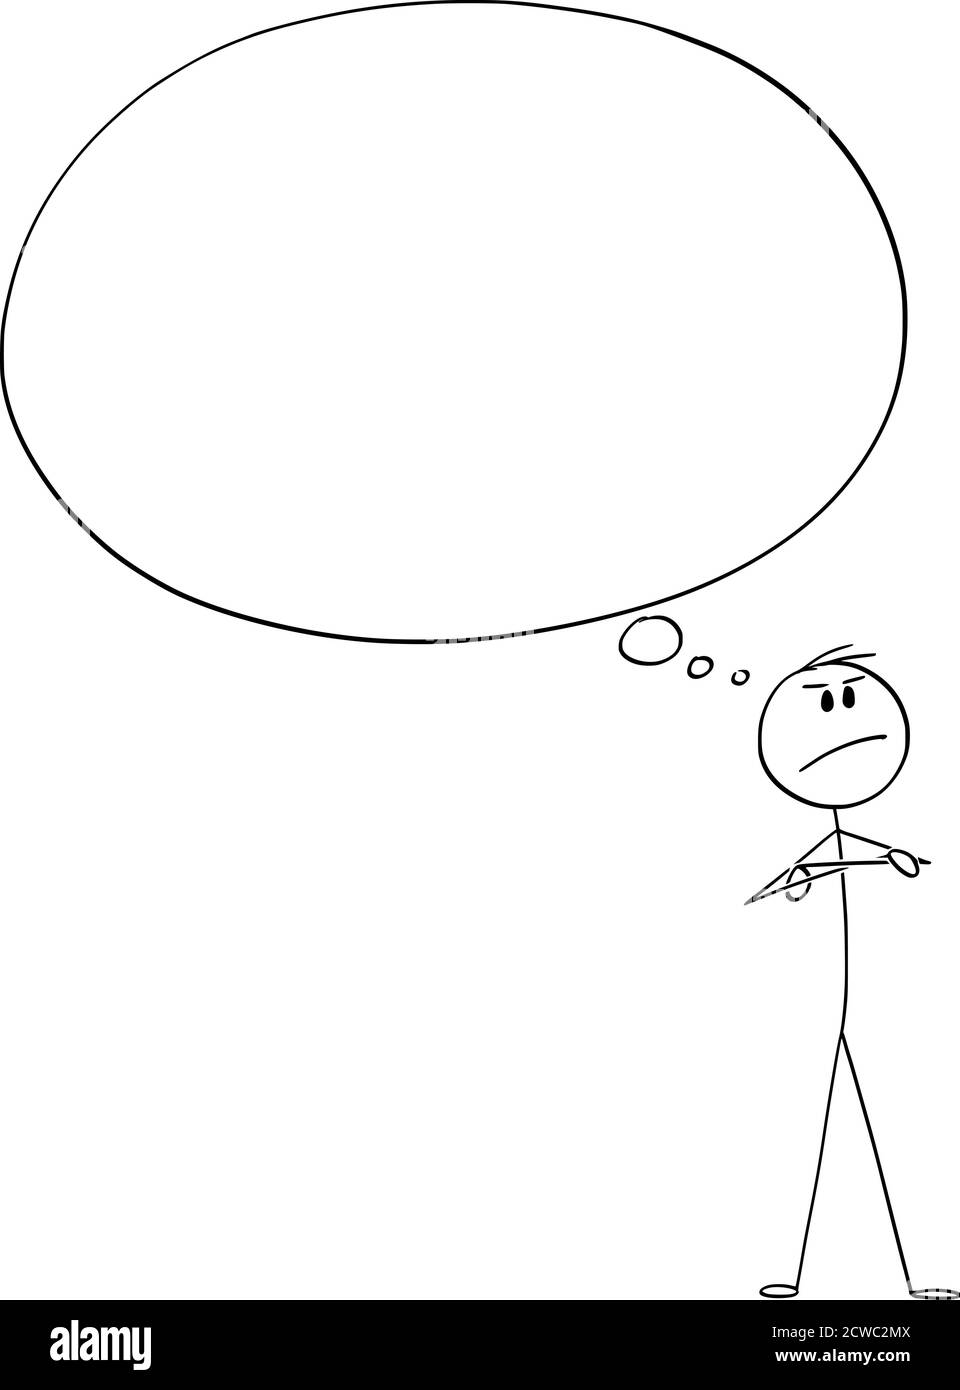 Grafico del cartoon vettoriale disegno illustrazione concettuale di uomo sicuro arrabbiato o uomo d'affari che pensa a qualcosa con enorme o grande bolla di pensiero vuota o palloncino. Illustrazione Vettoriale